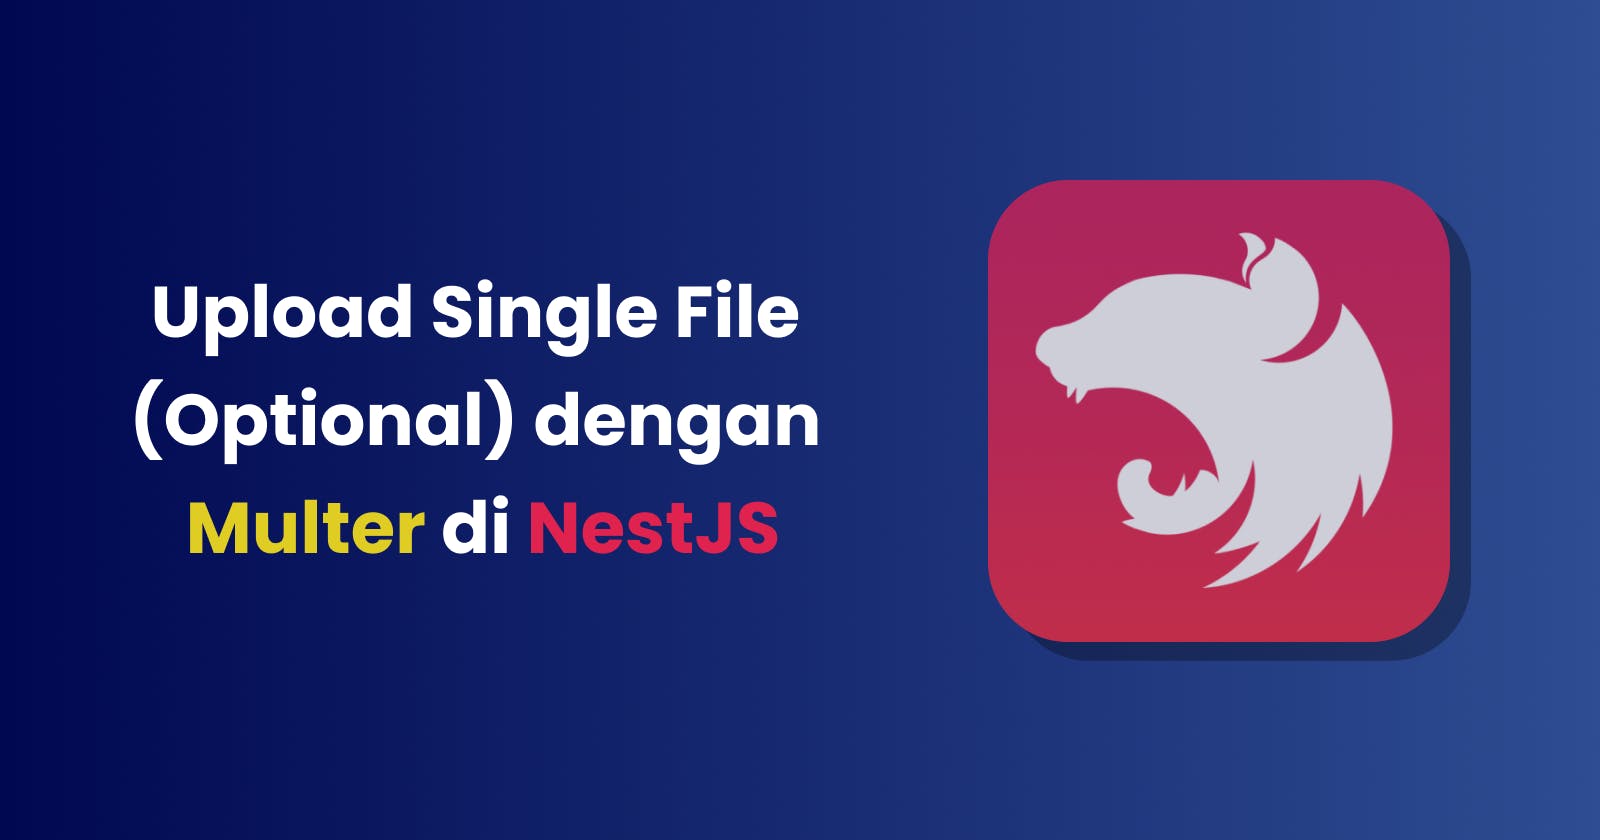 Upload Single File (Optional) dengan Multer di NestJS